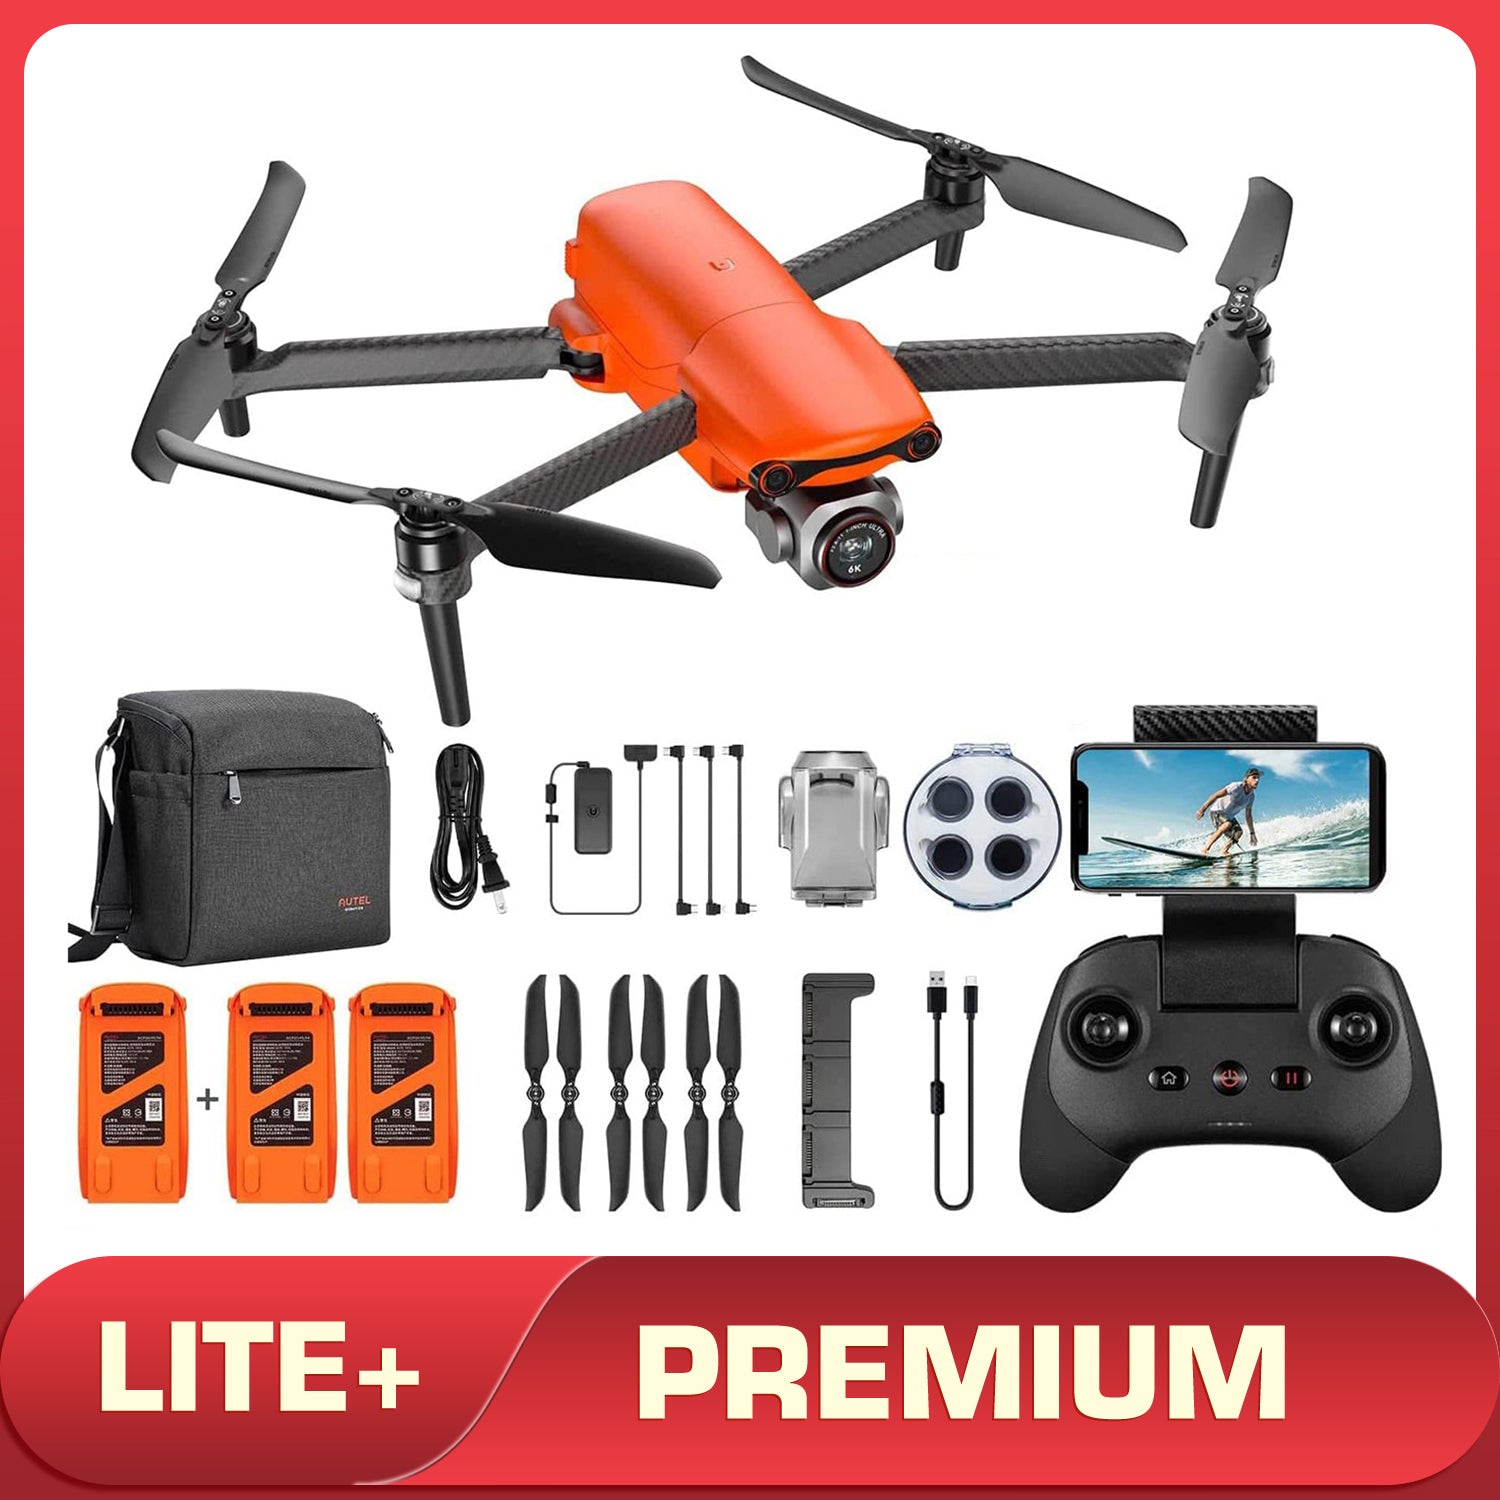 Autel Robotics EVO Lite+ Drone Premium Bundle-Orange